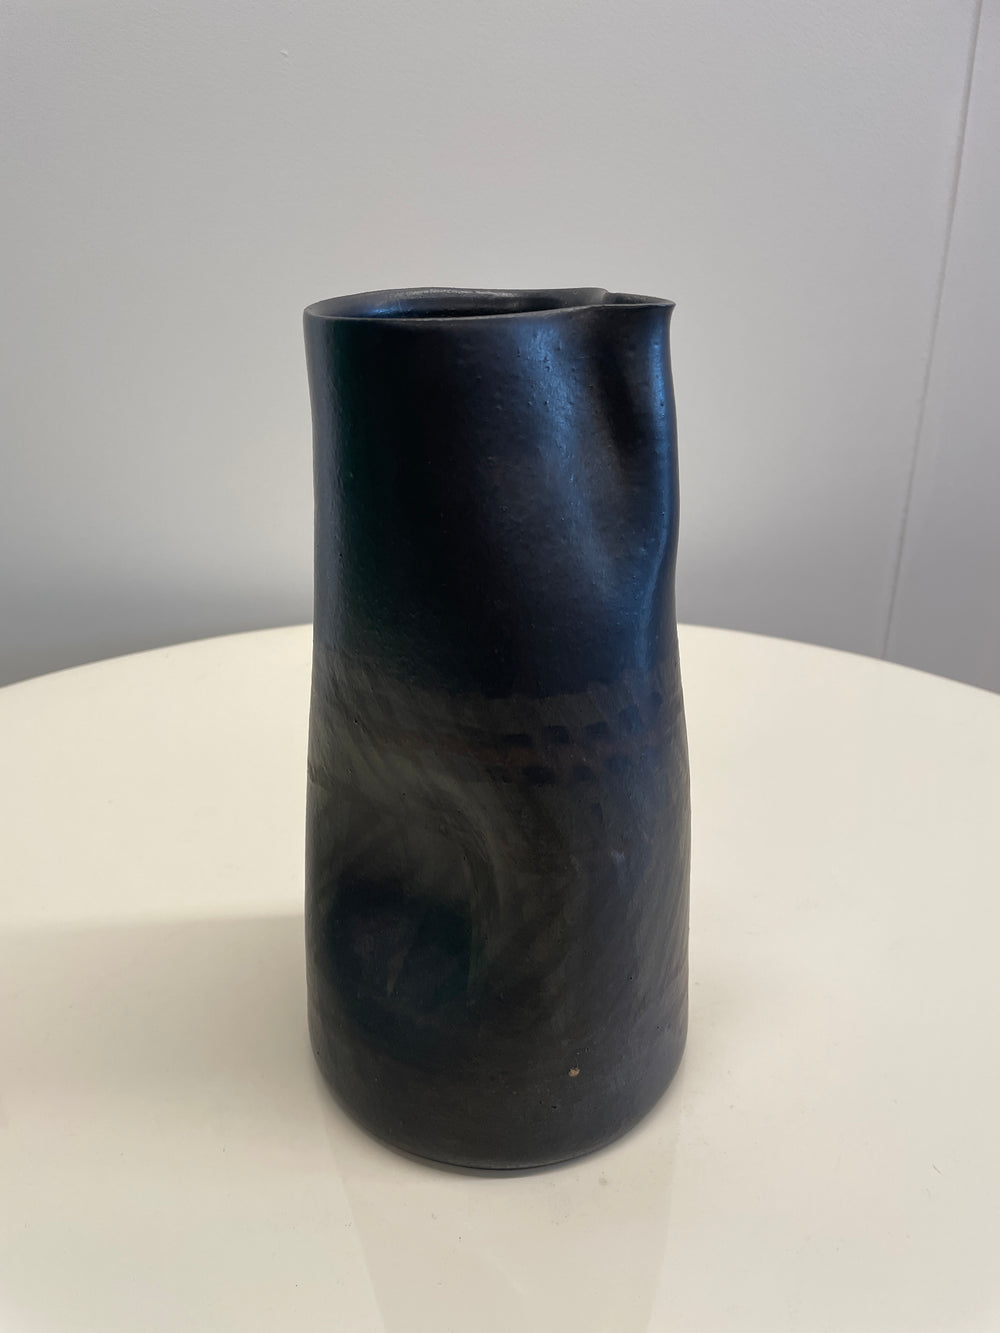 Alessio Tasca ceramic vase, Italy, 1970s